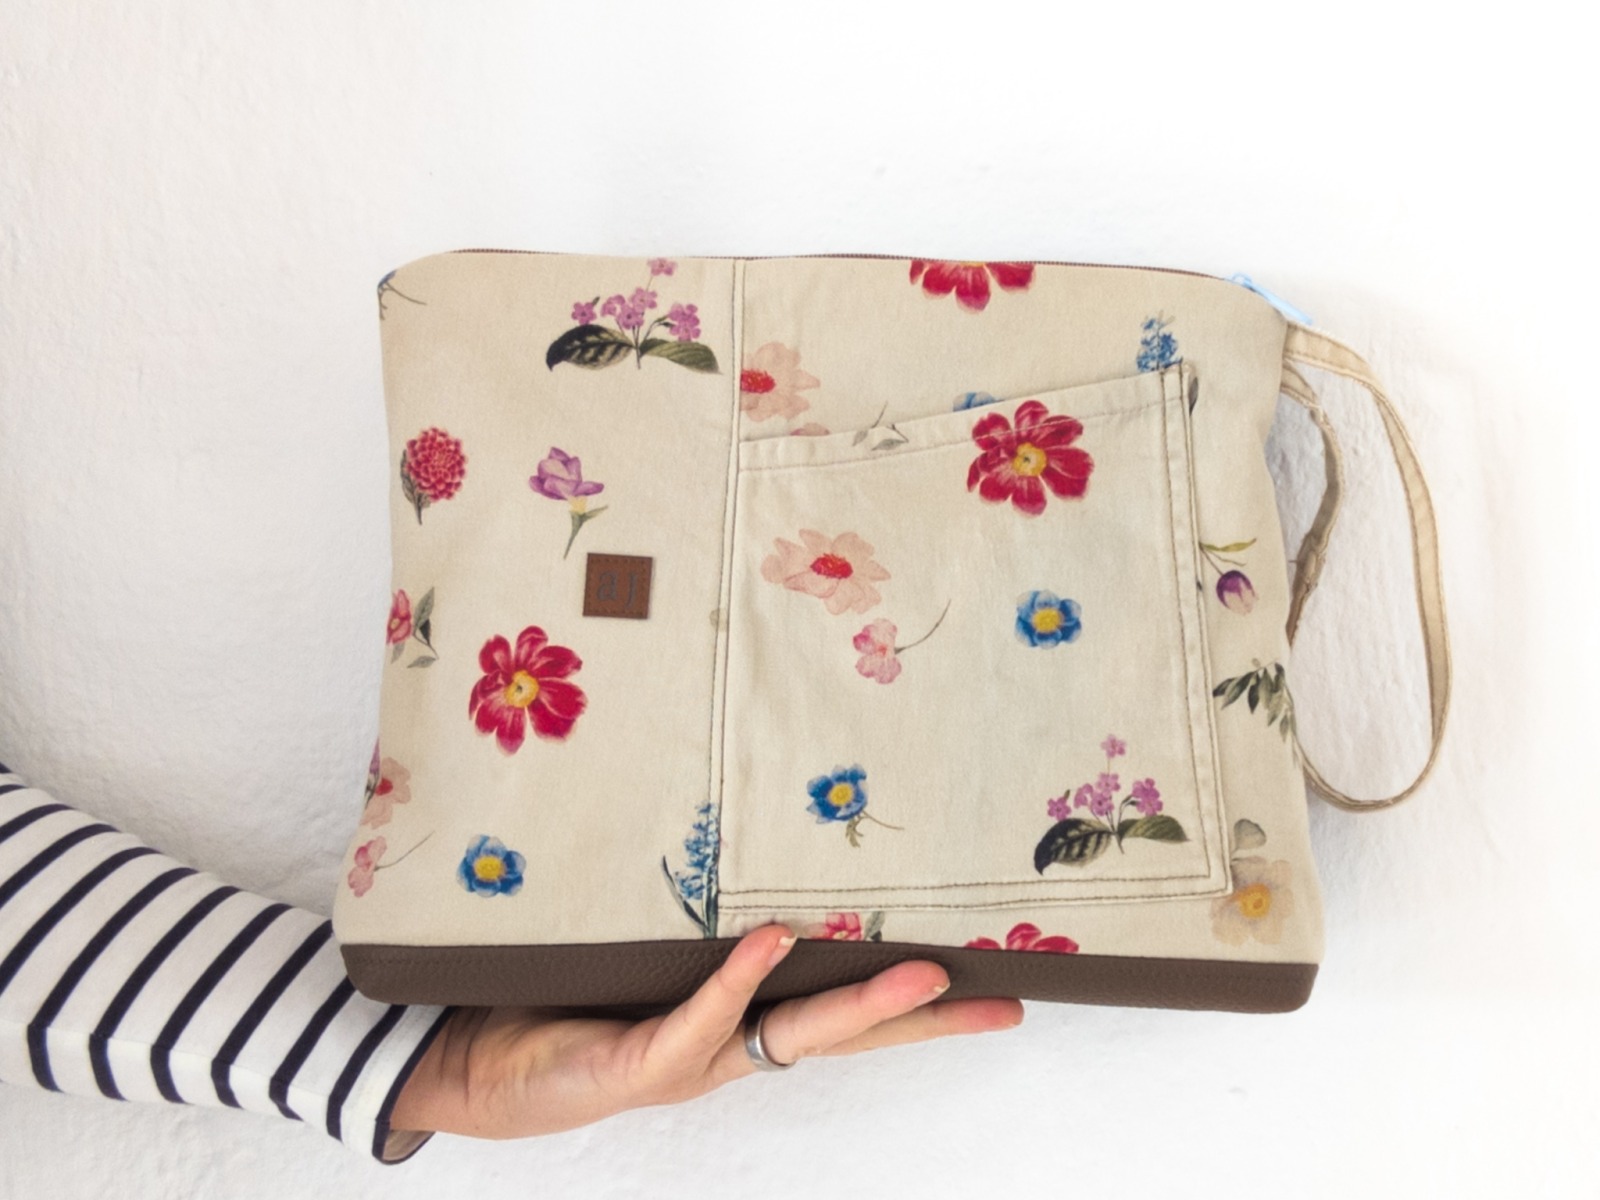 Maxi-Kulturtasche | Jeans | beige | Blumenprint | Kunstleder | Patchworklook | Tasche außen |